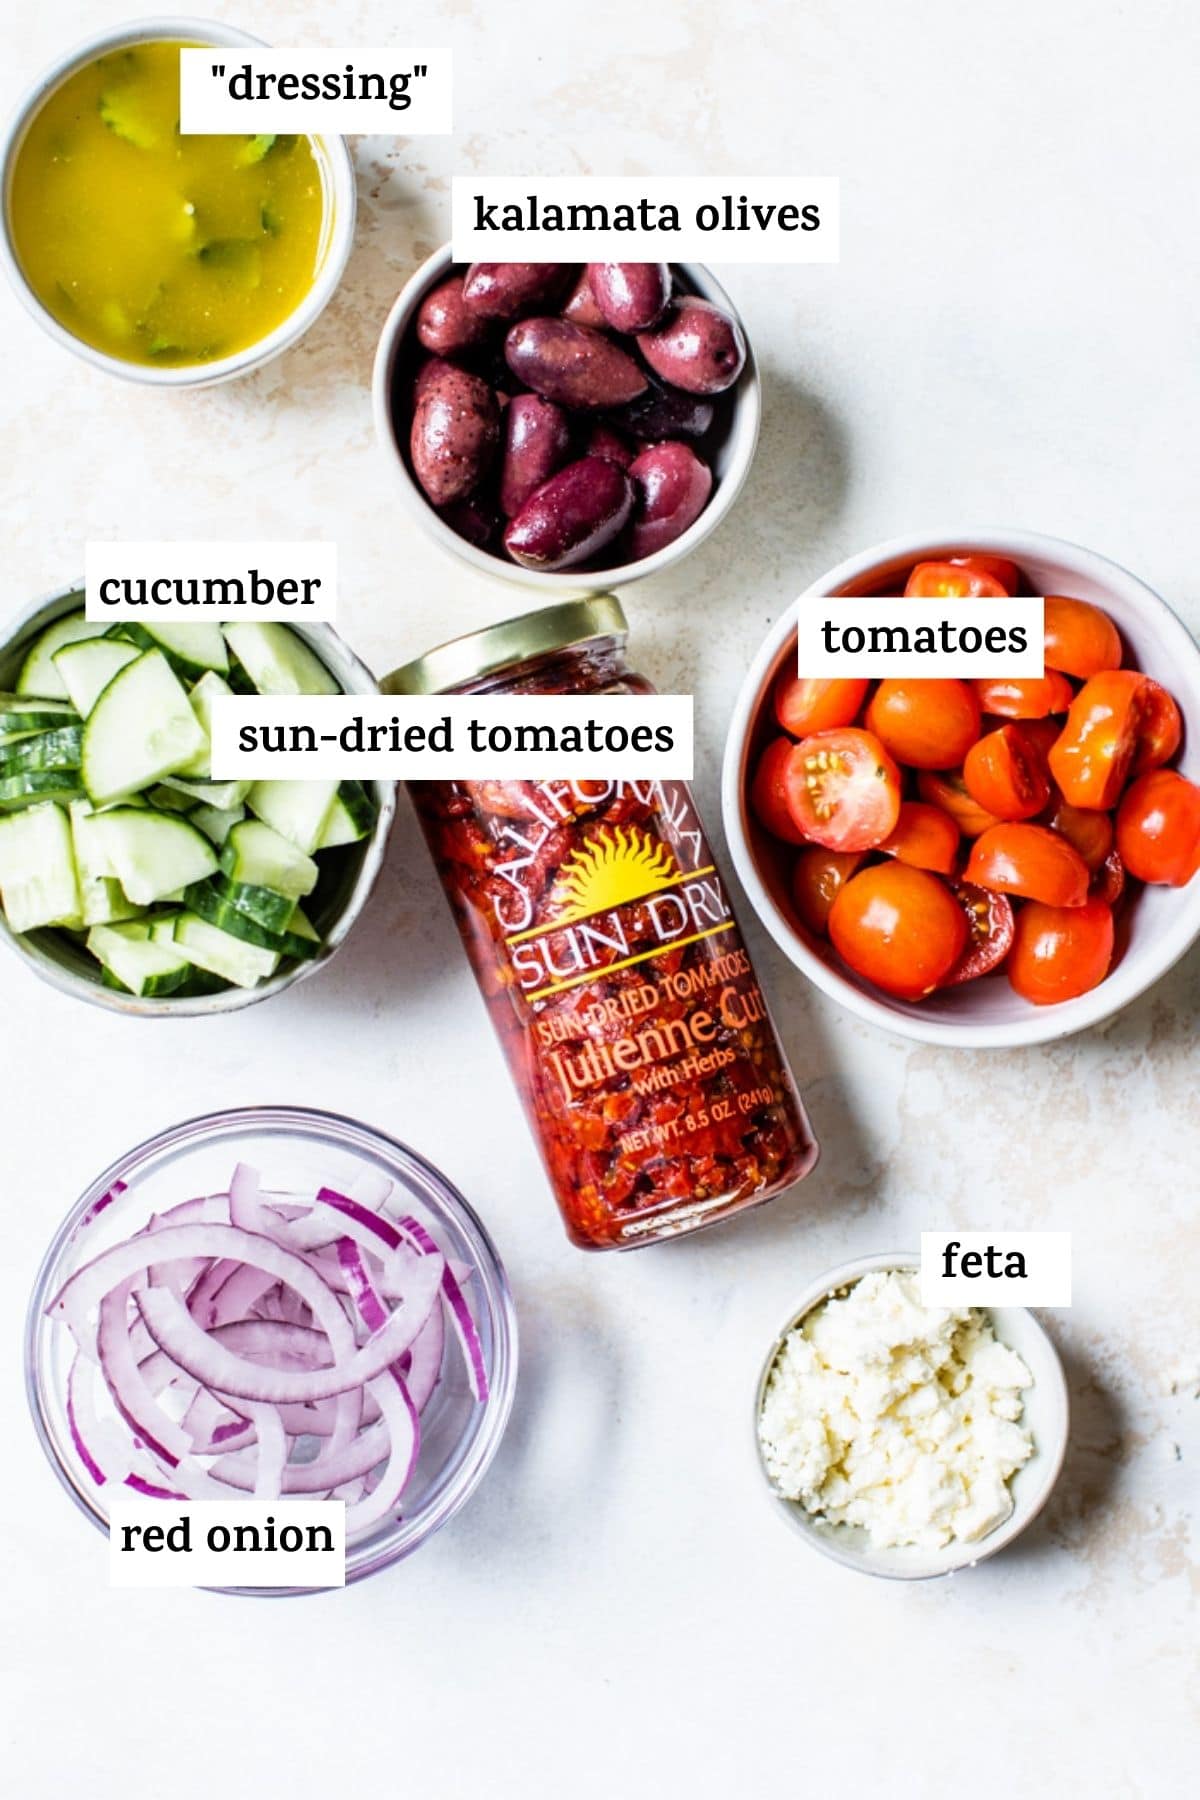 güneşte kurutulmuş domates ve kırmızı soğan gibi makarna salatası yapmak için malzemeler